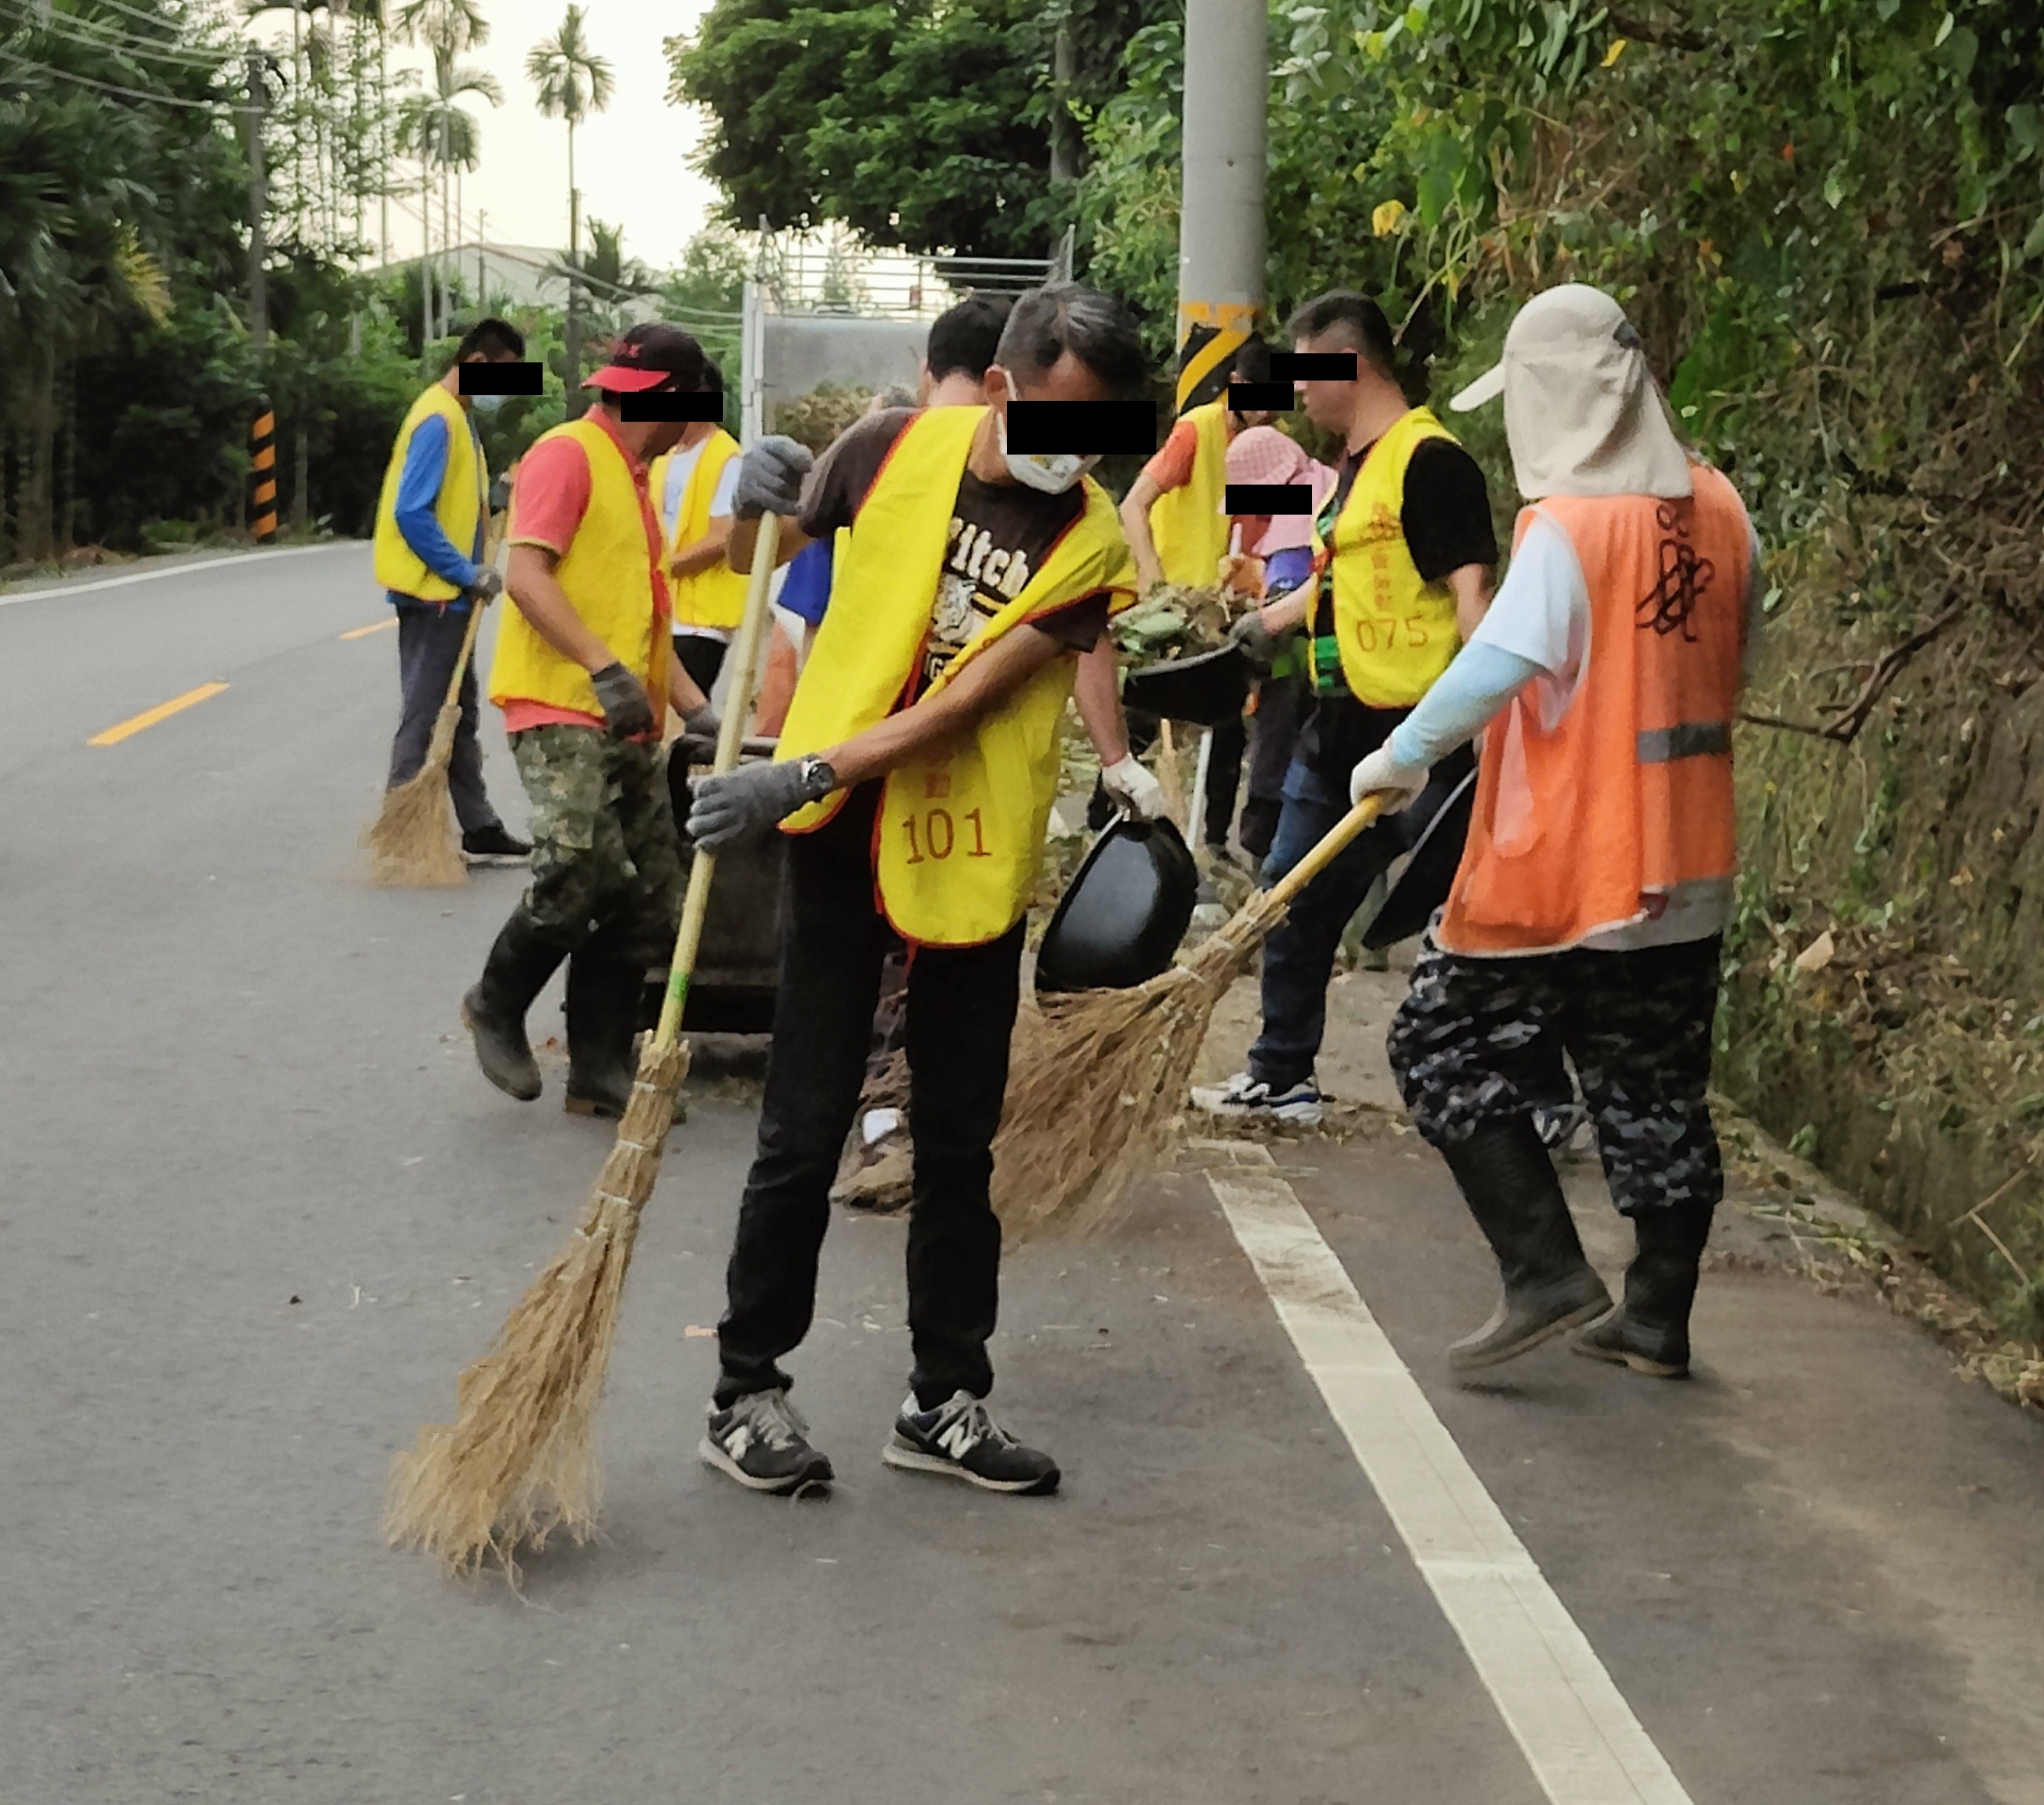 8.勞動人合力將路邊灰塵掃除。